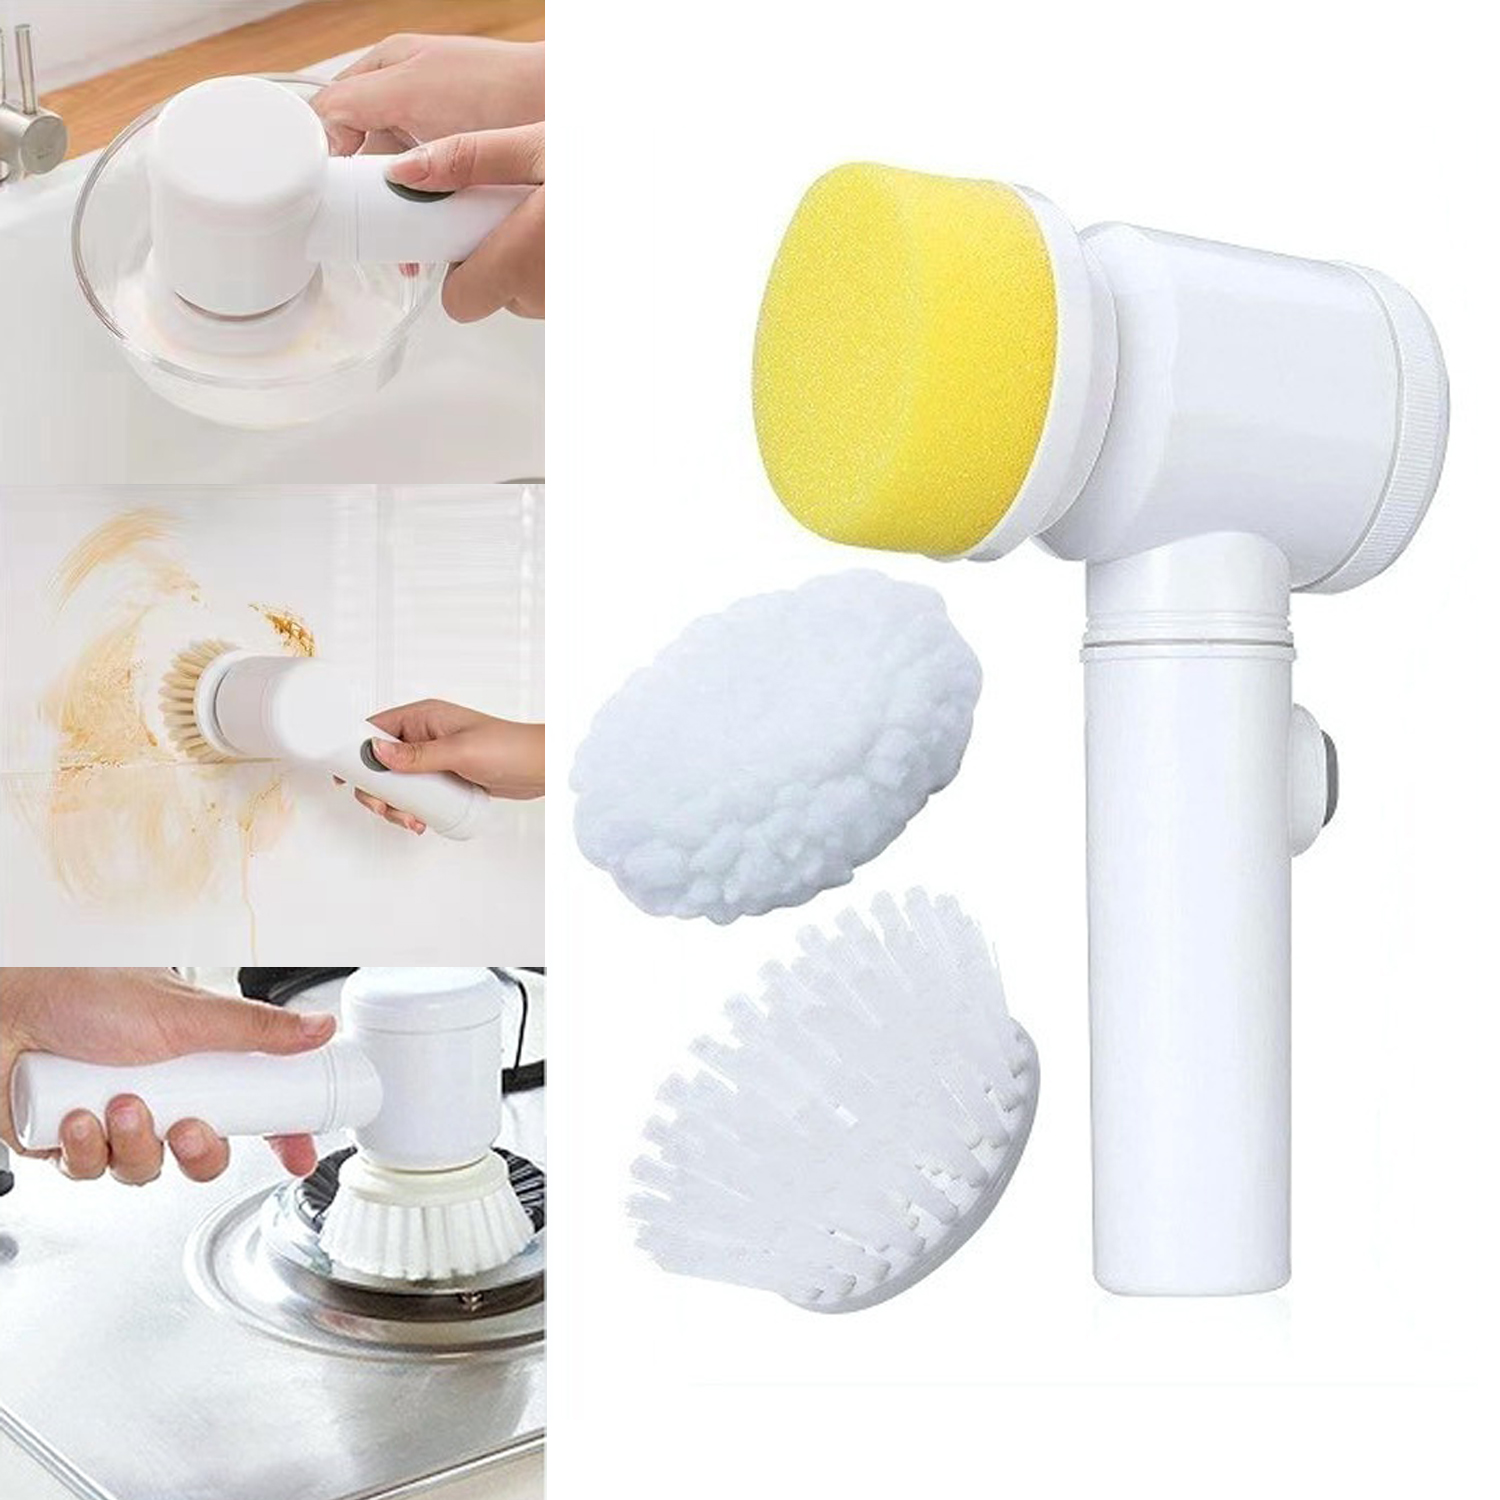 Limpiador de cepillo eléctrico de bañera de mano, depurador para cocina, baño, herramienta de limpieza inalámbrica